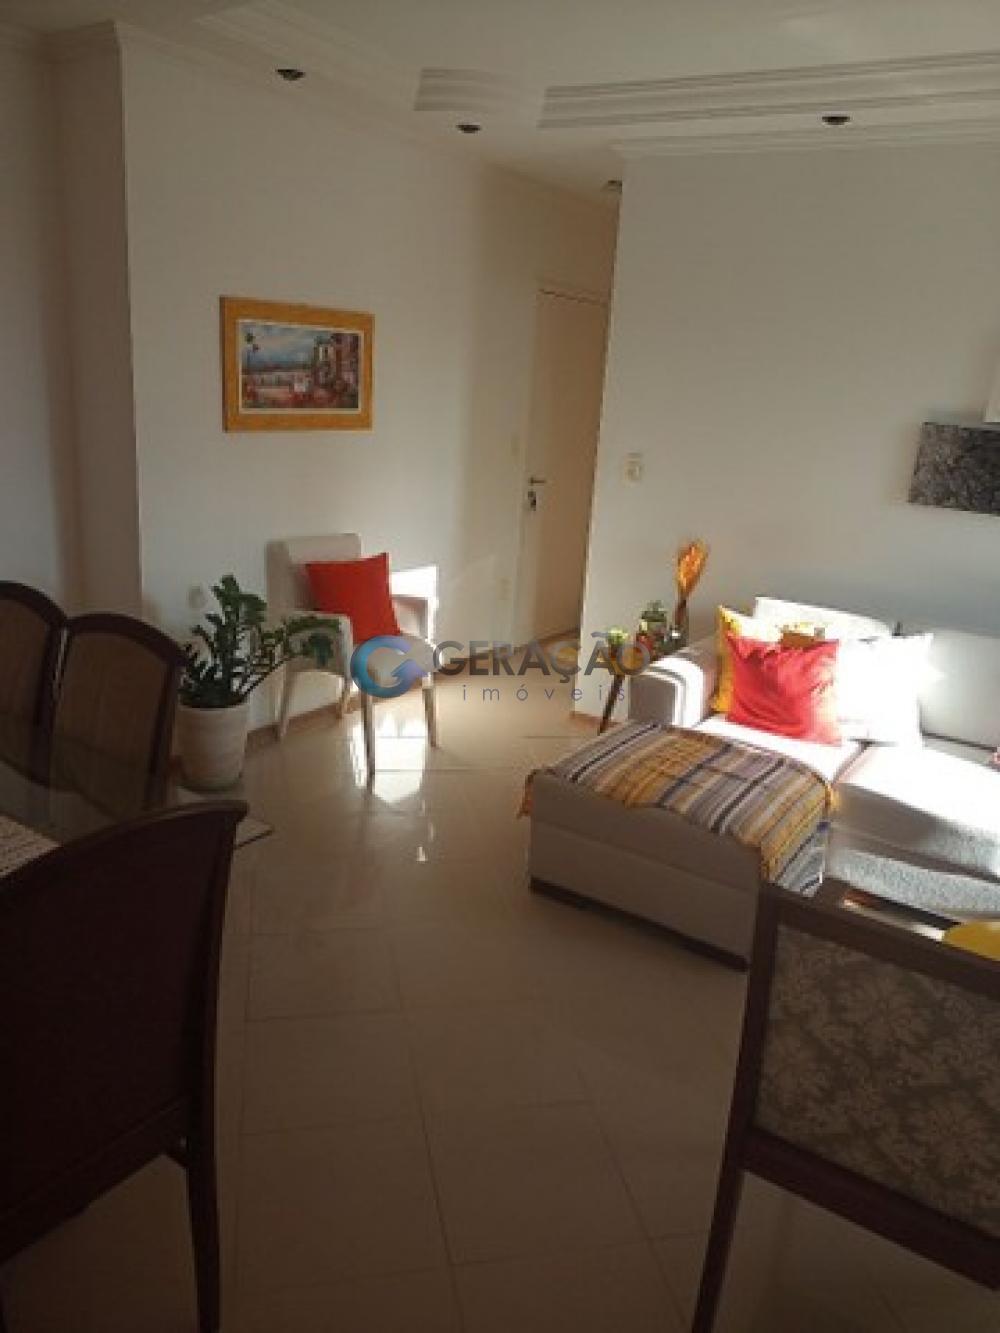 Comprar Apartamento / Padrão em São José dos Campos R$ 480.000,00 - Foto 2